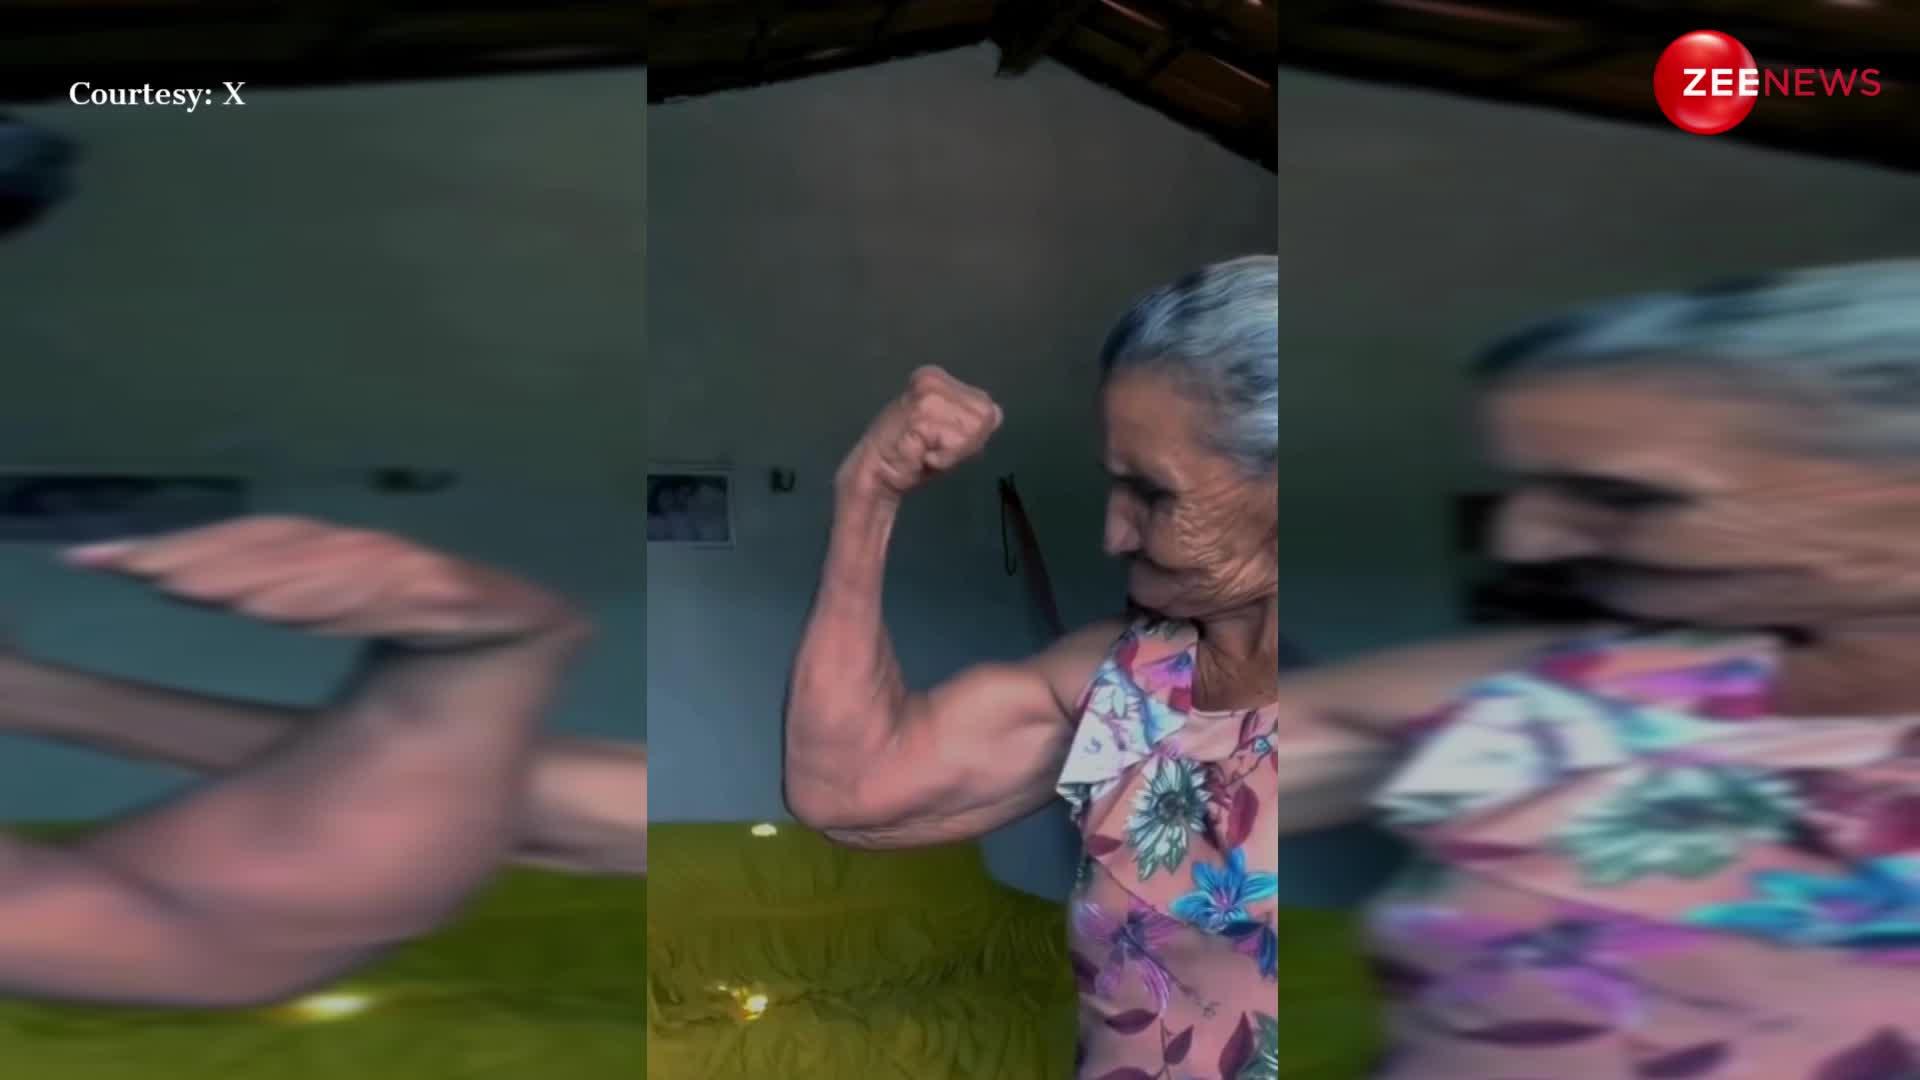 इंटरनेट पर वायरल हुई 'ढाई किलो' के हाथ वाली दादी, बाइसेप्स देख उम्र का अंदाजा लगाना होगा मुश्किल; आप भी करेंगे सैल्यूट